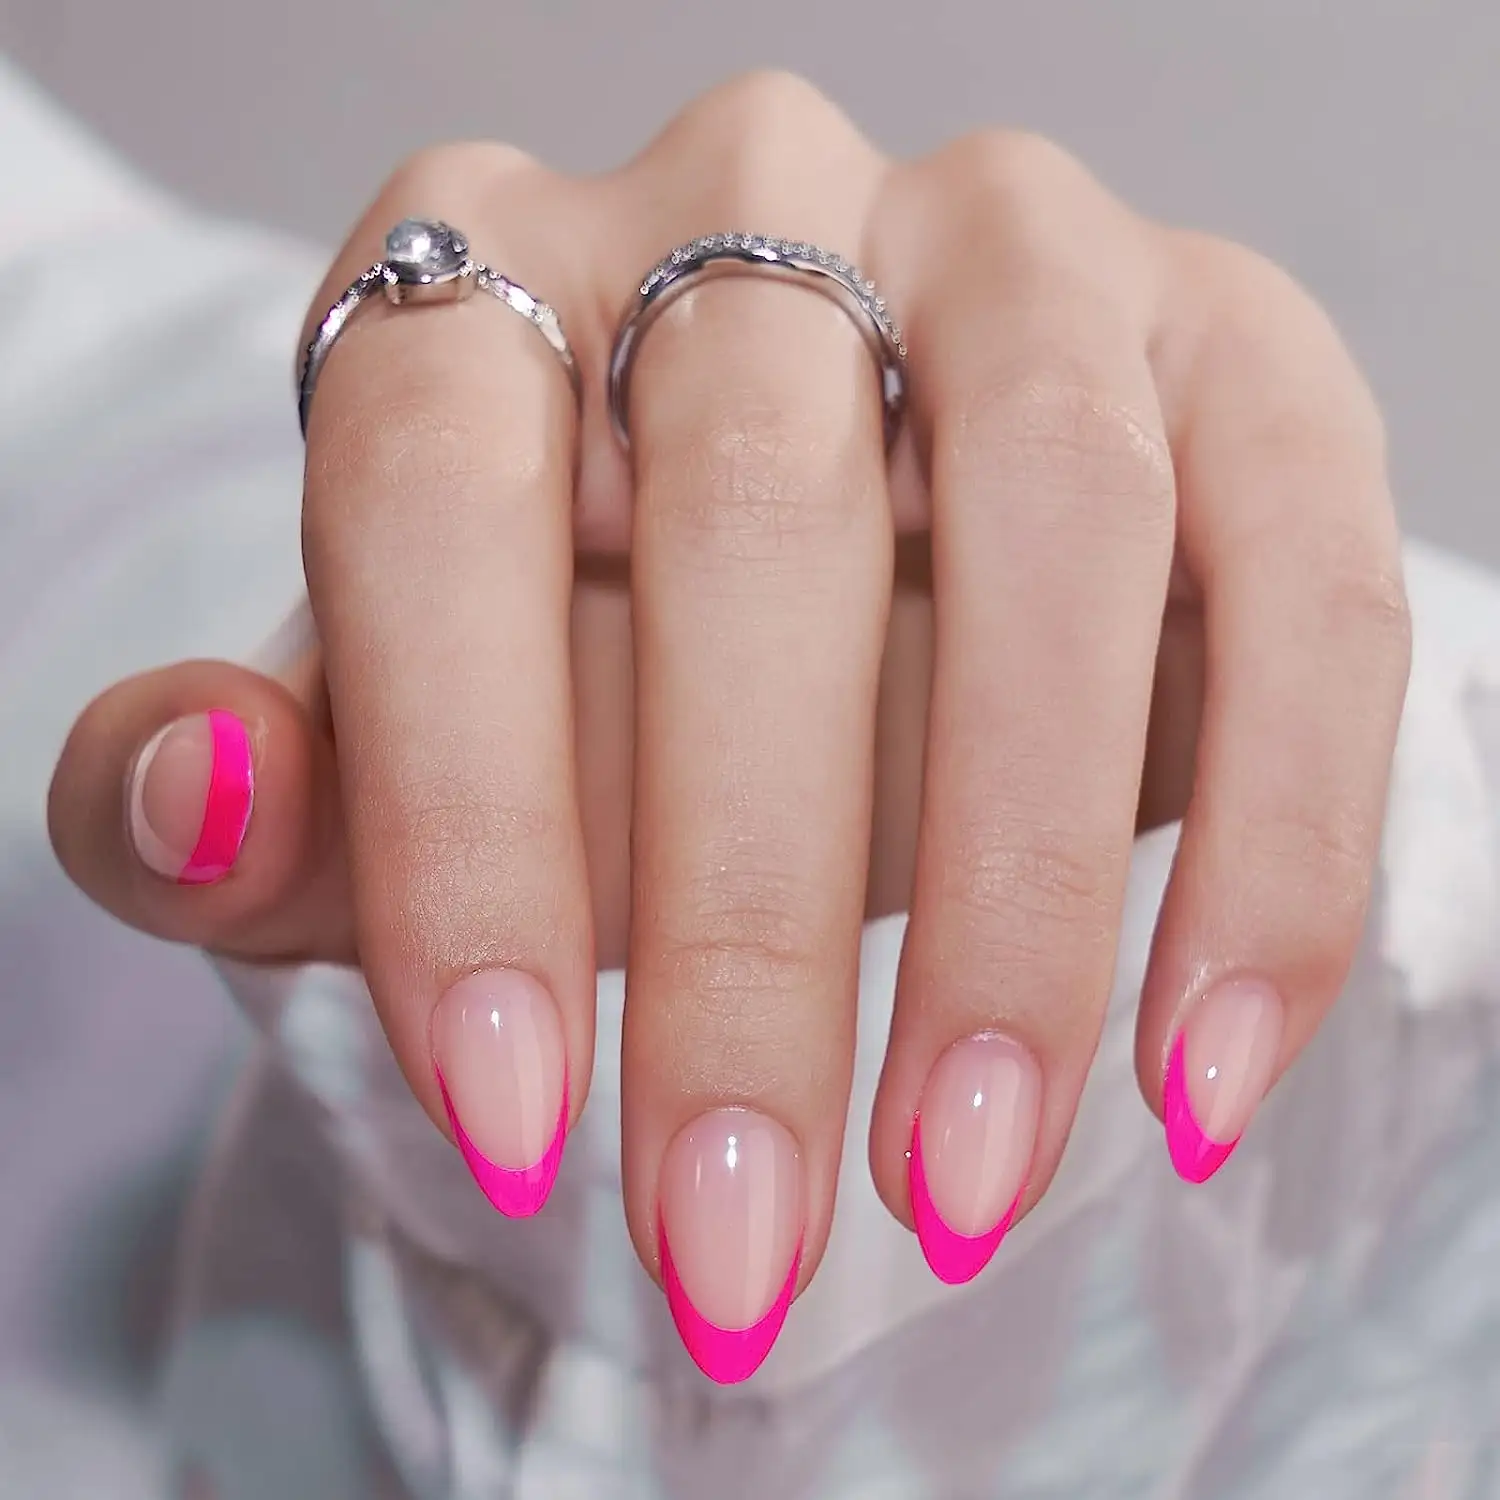 Prensa de Punta francesa en las uñas Almendra Hot Pink Press en las uñas Palo corto en las uñas para mujeres